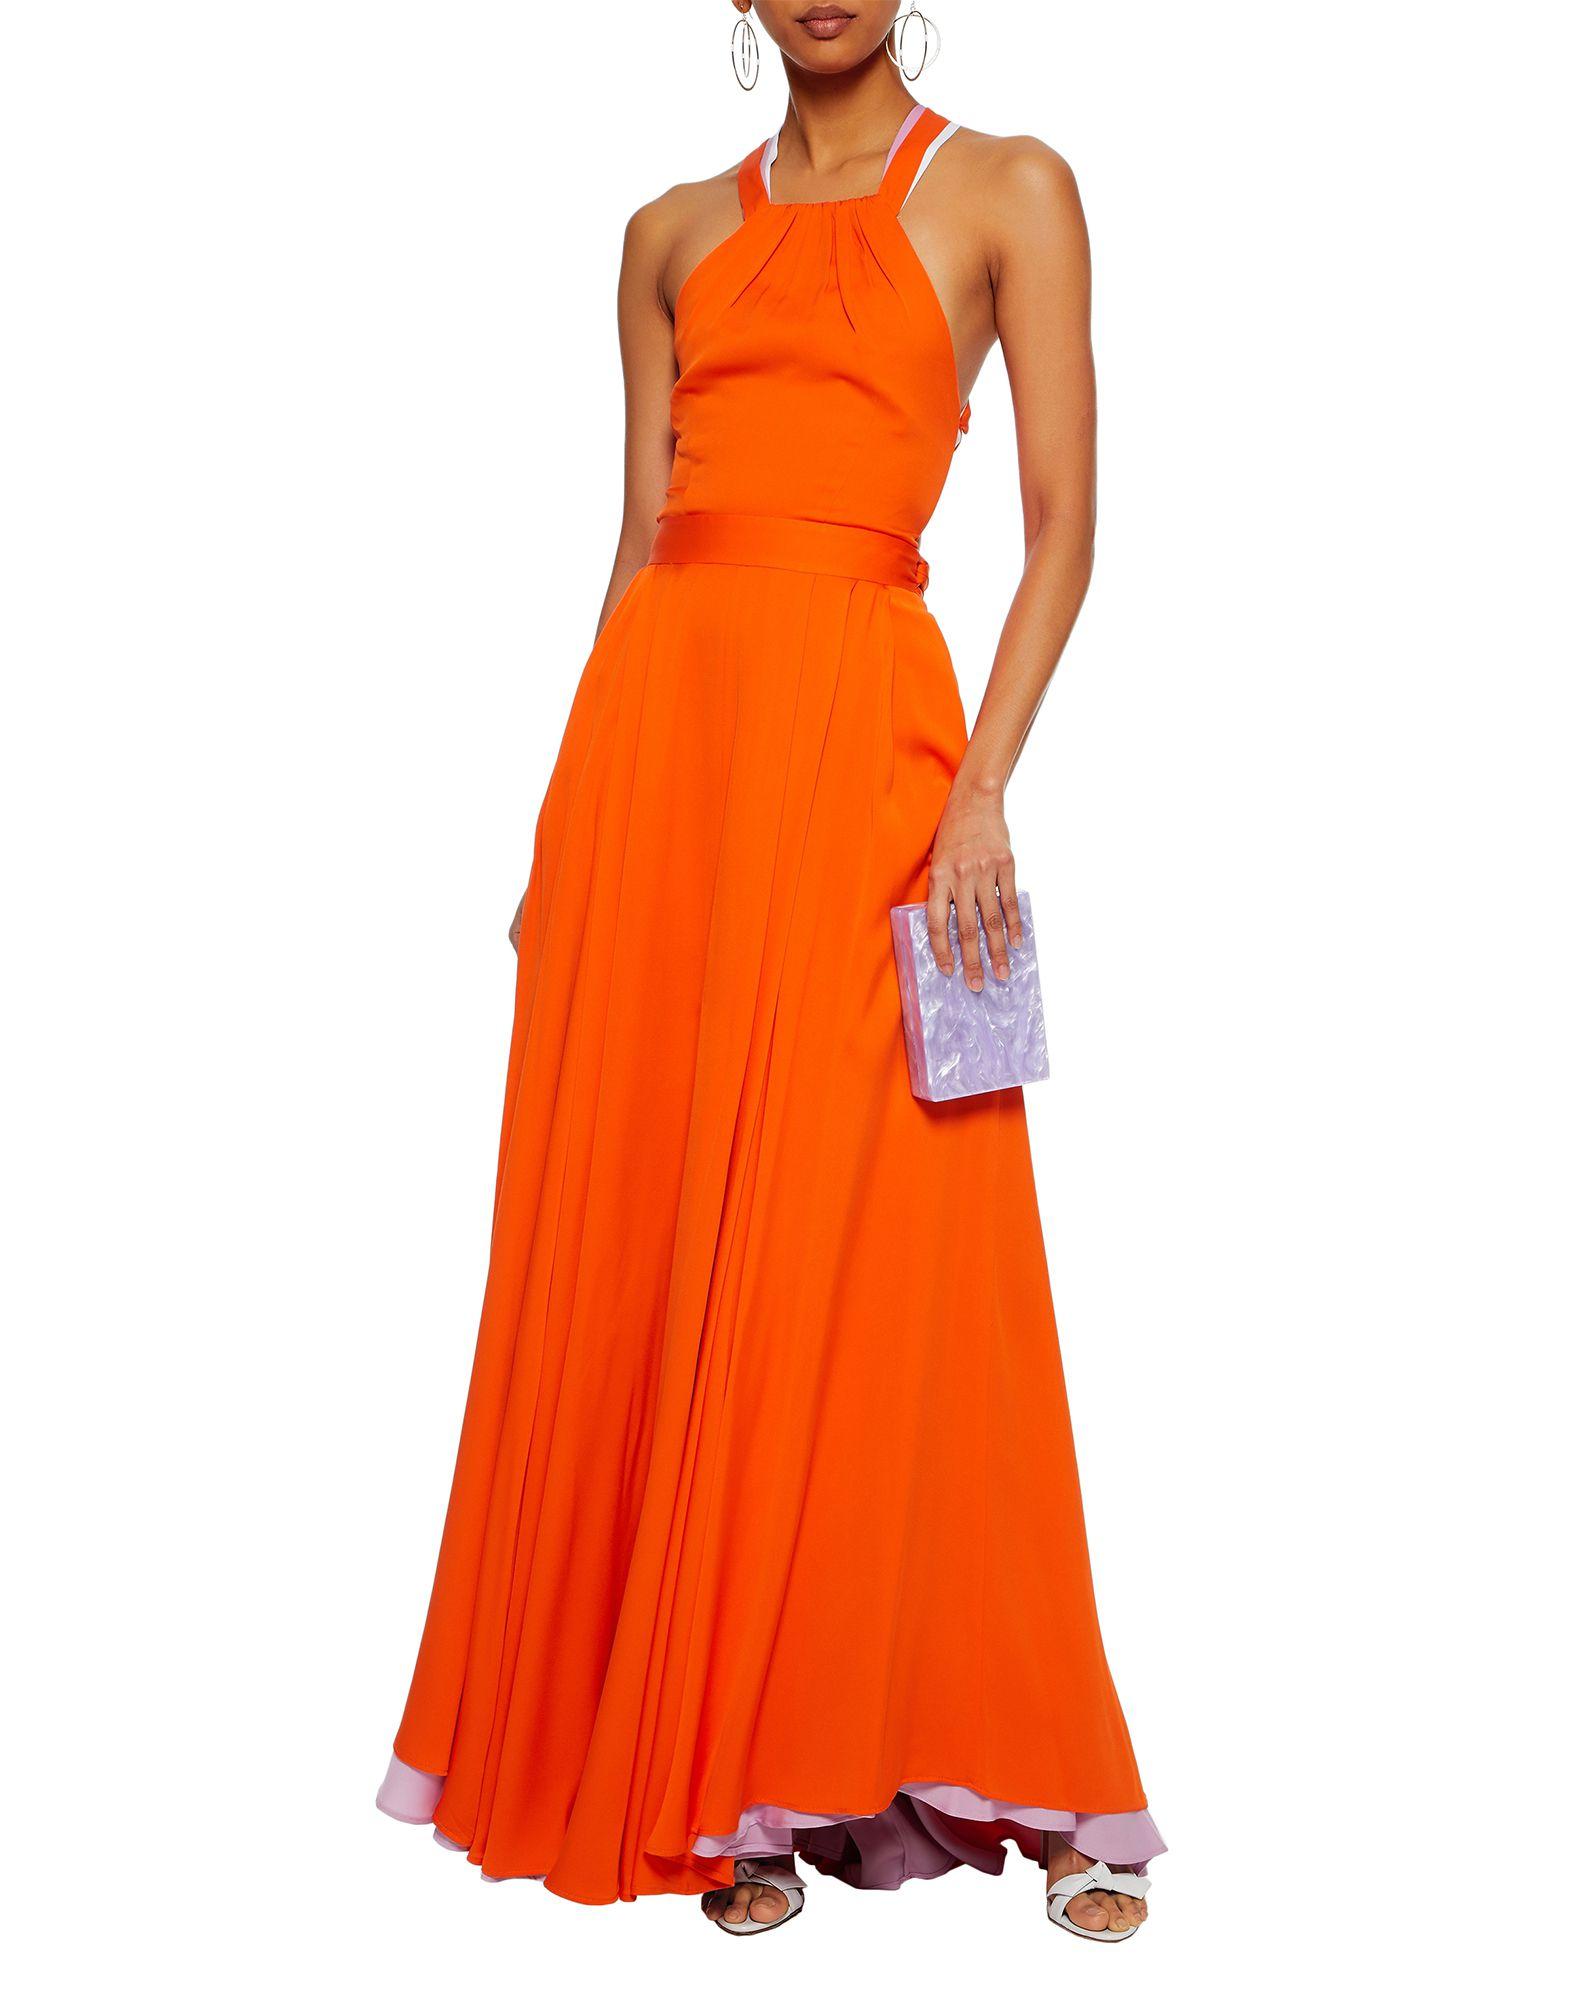 MILLY Long Dress in Orange - Lyst